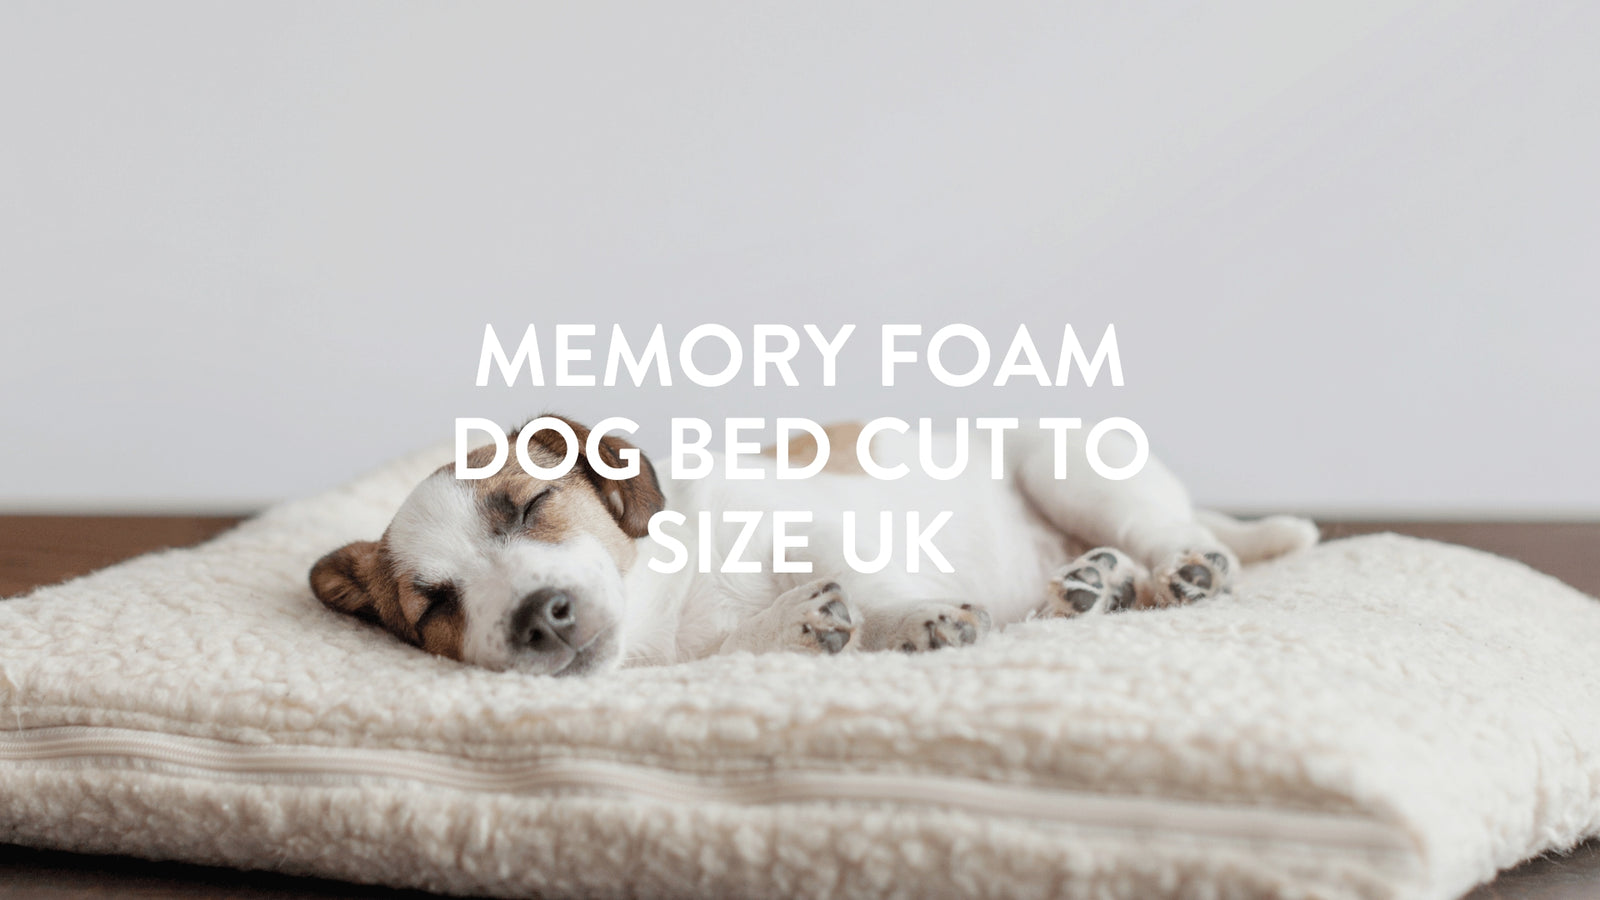 Memory Foam Dog Bed Cut To Size UK | Putnams